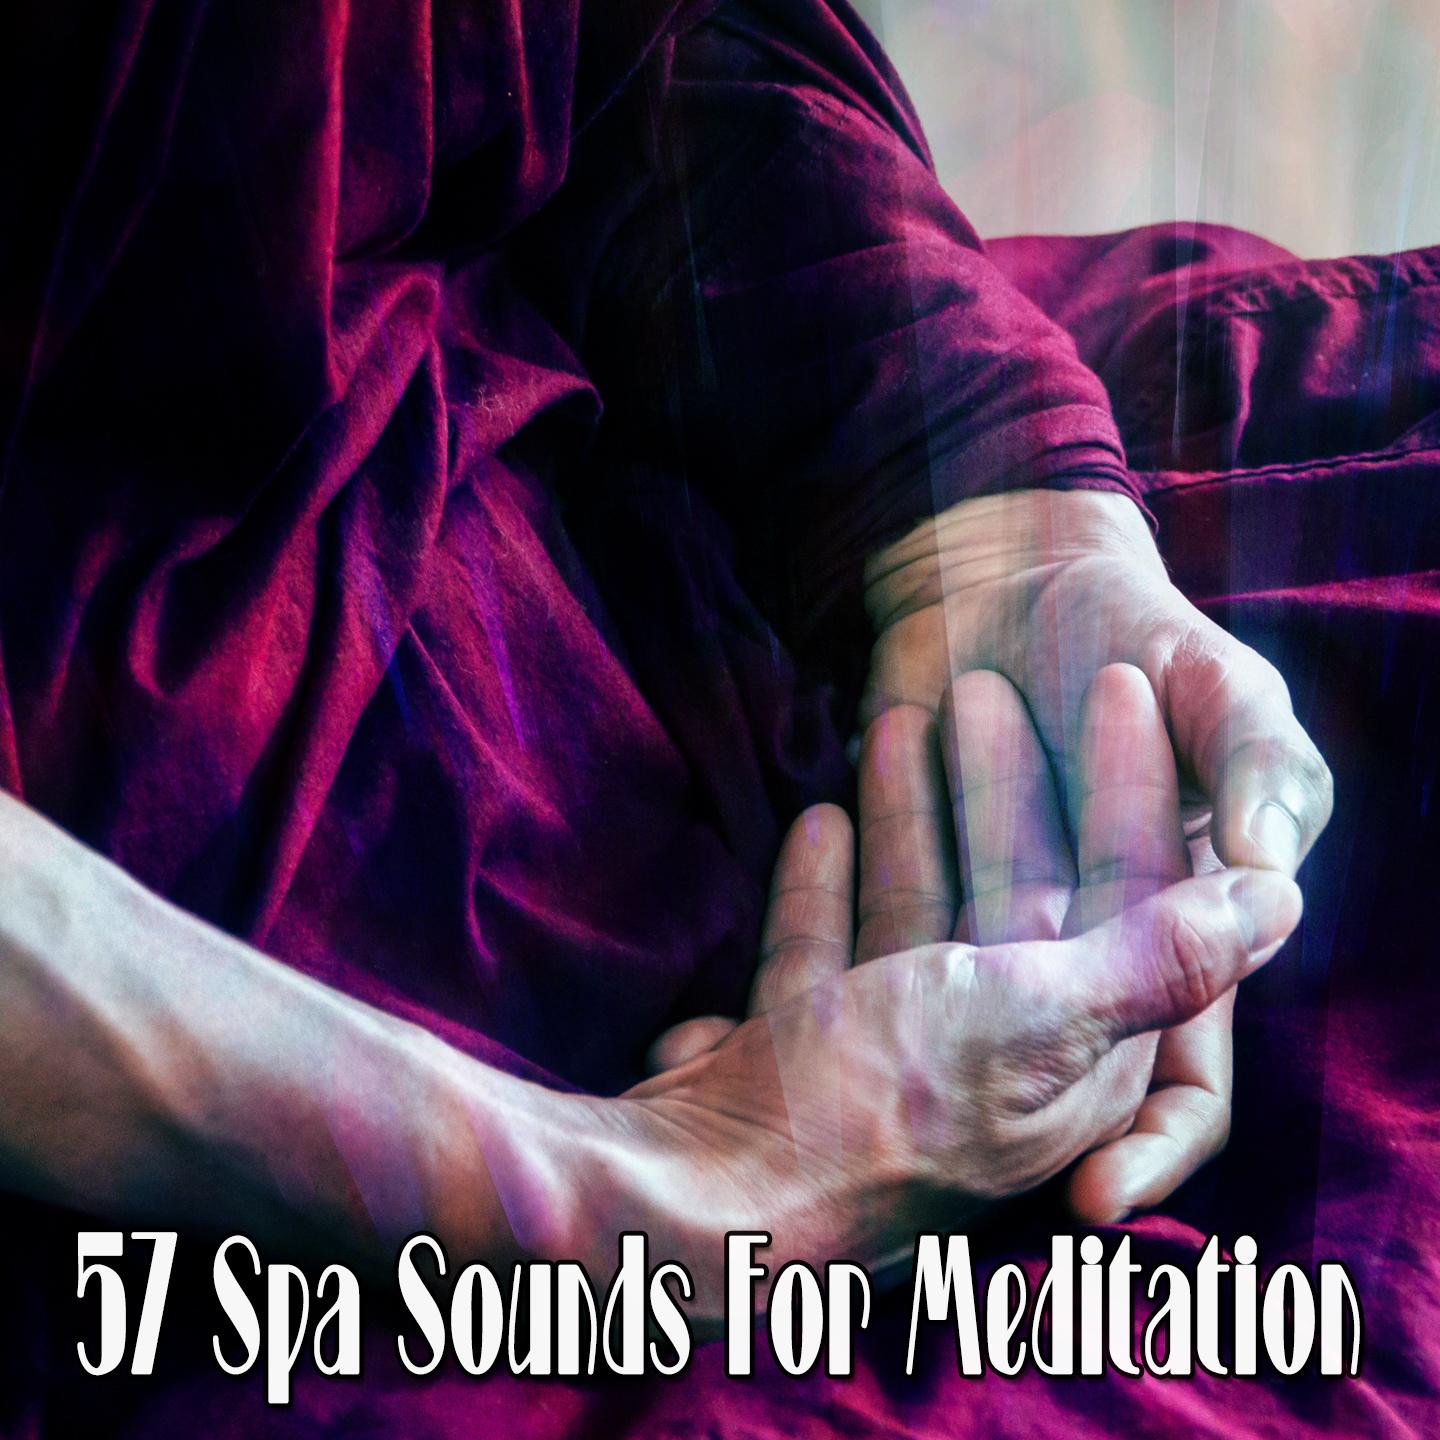 57 Spa Sounds For Meditation